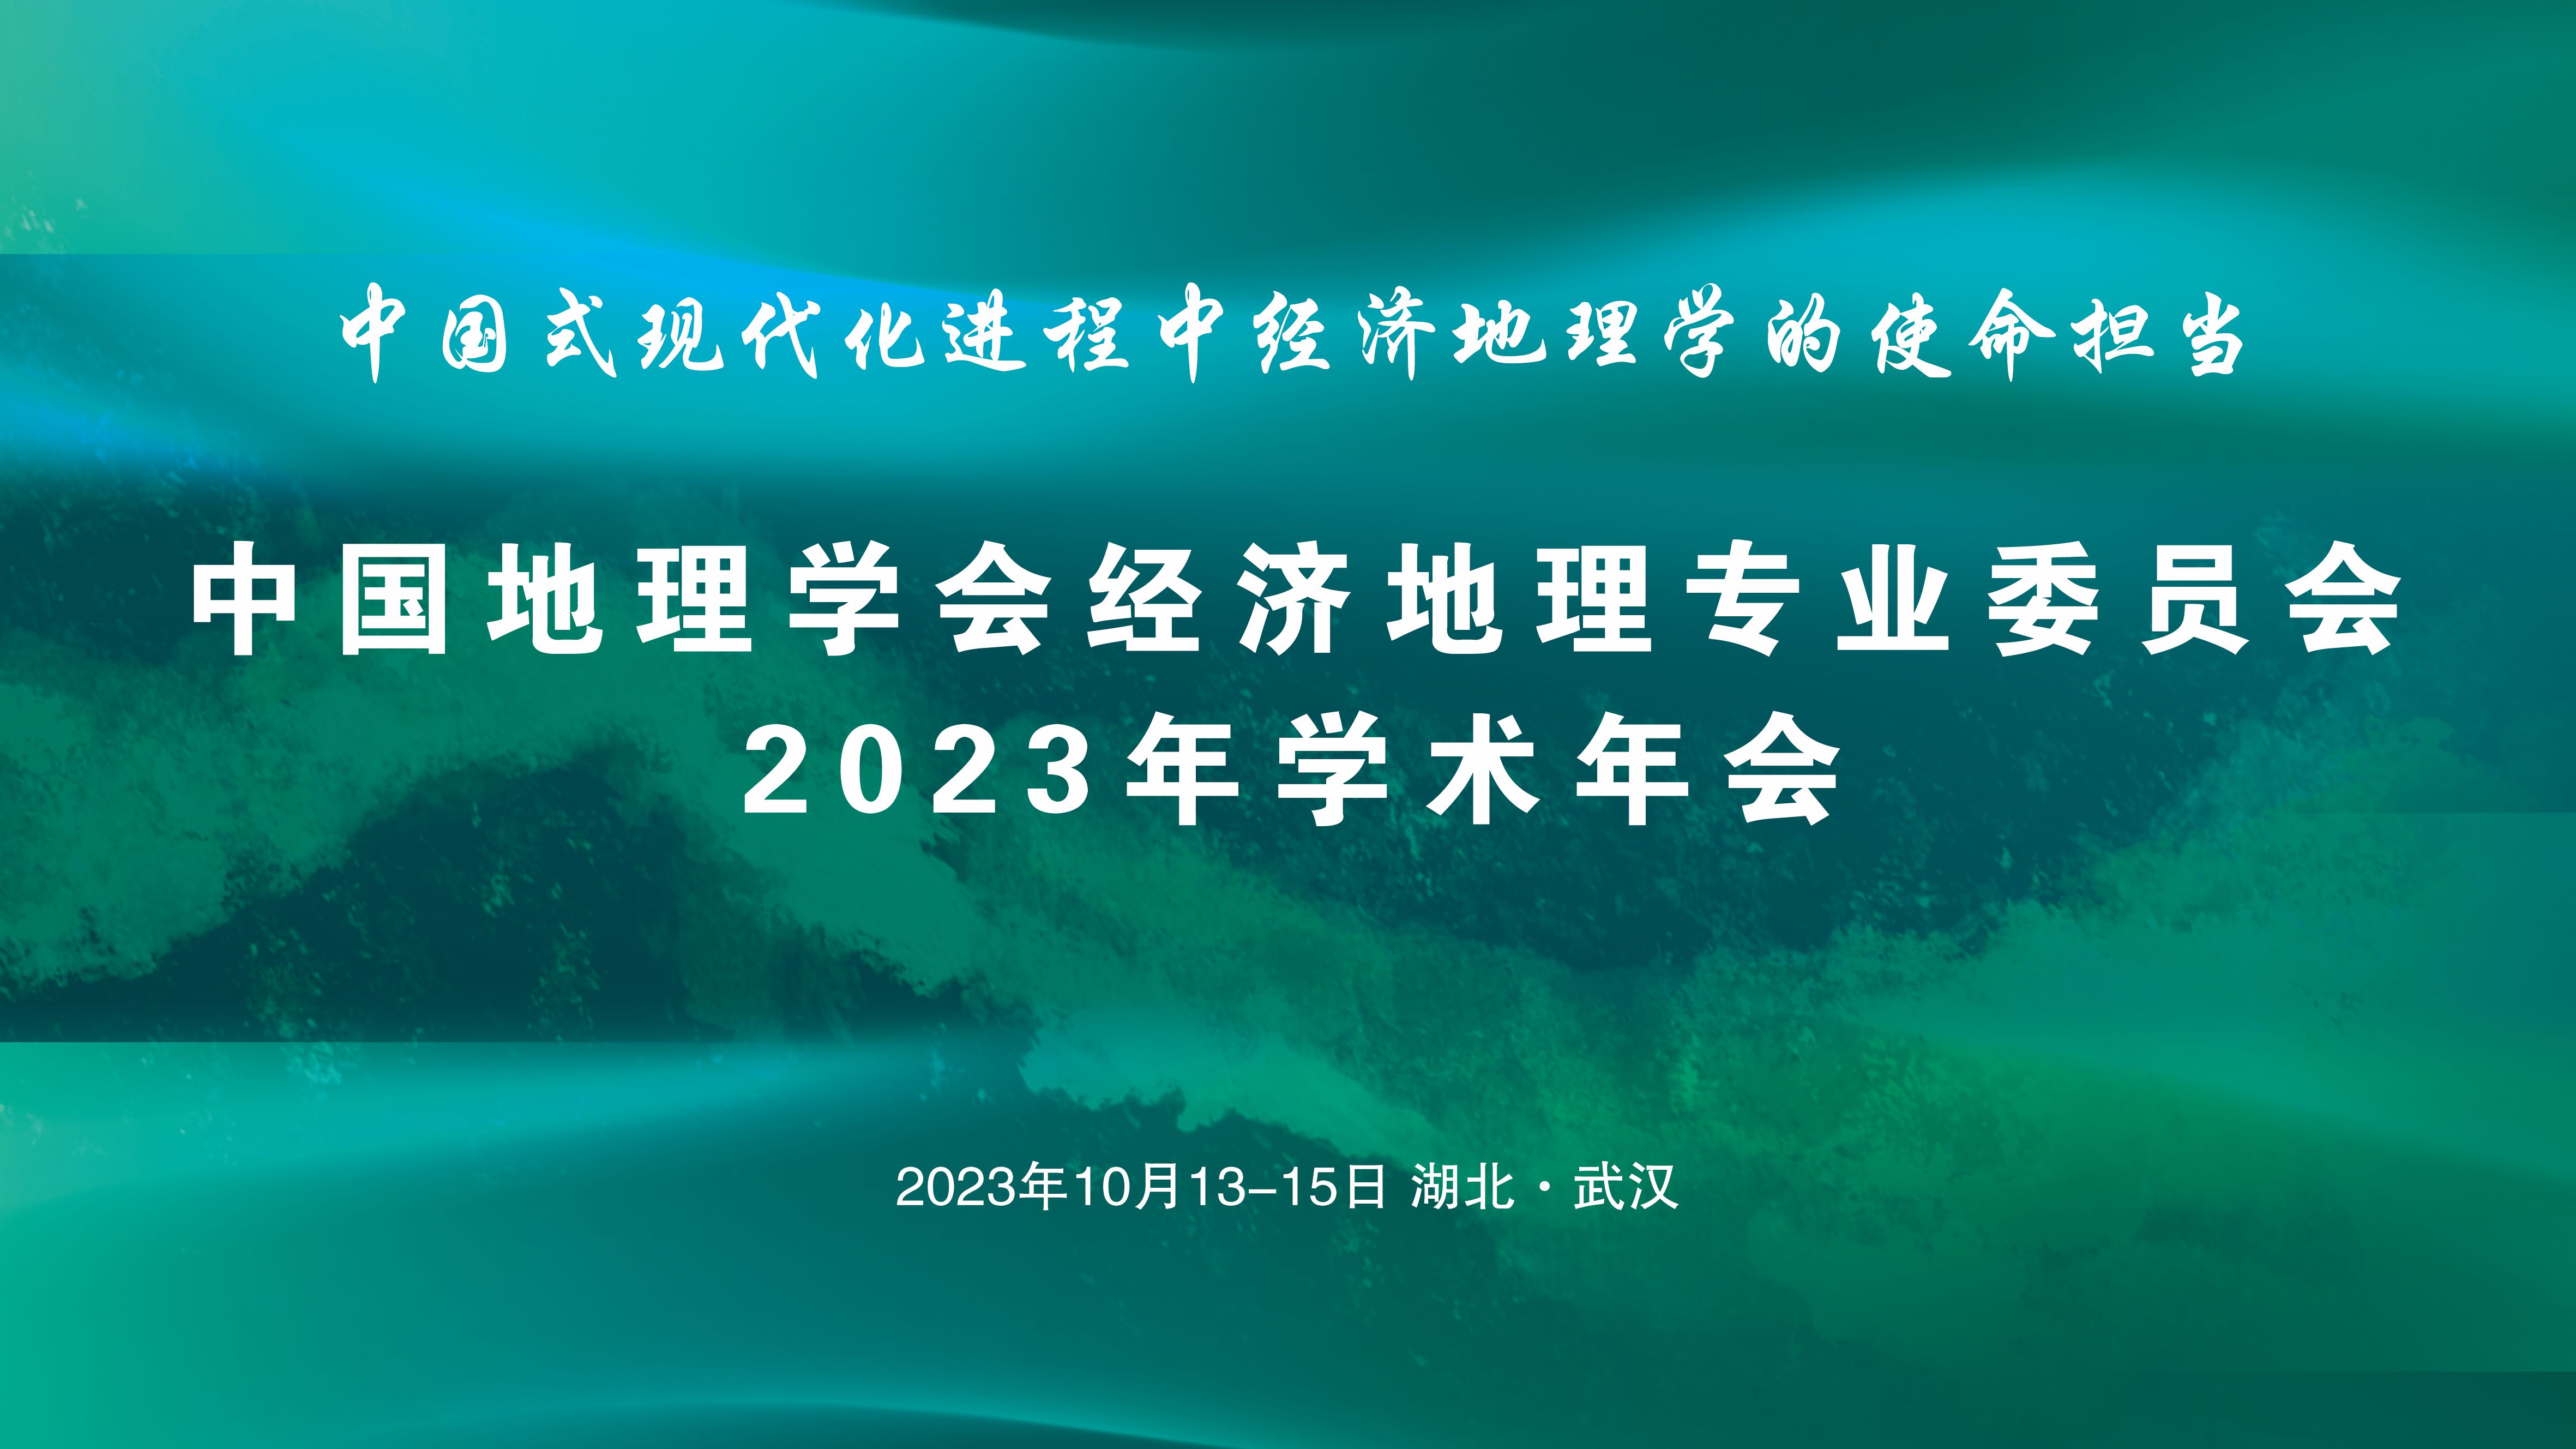 中国地理学会经济地理专业委员会2023年学术年会通知 <br>（第一轮）